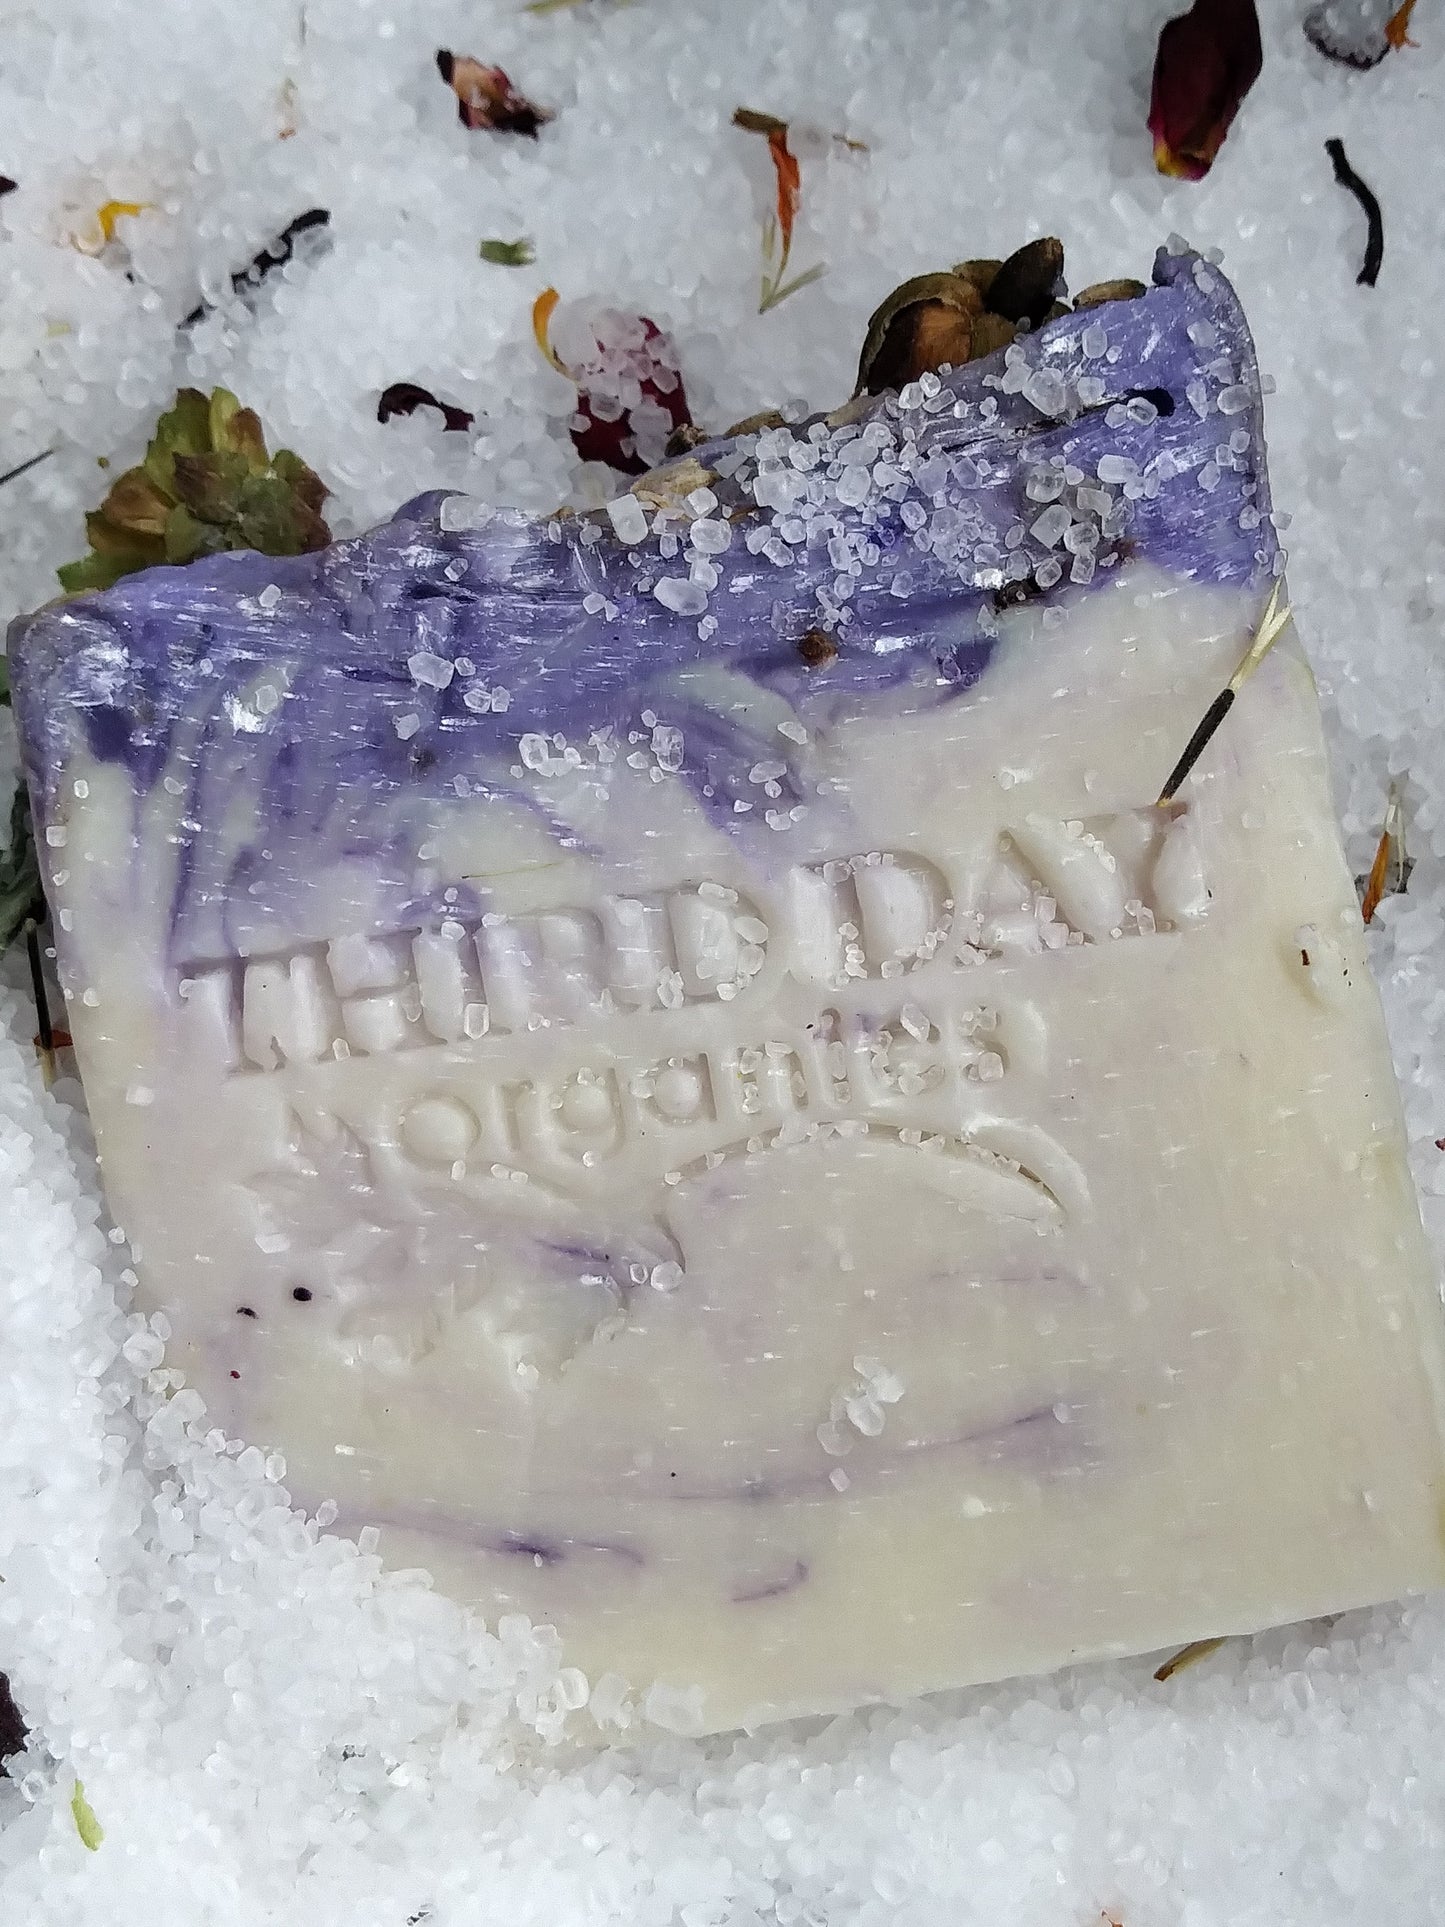 Lavender Skin Care Soap Bars